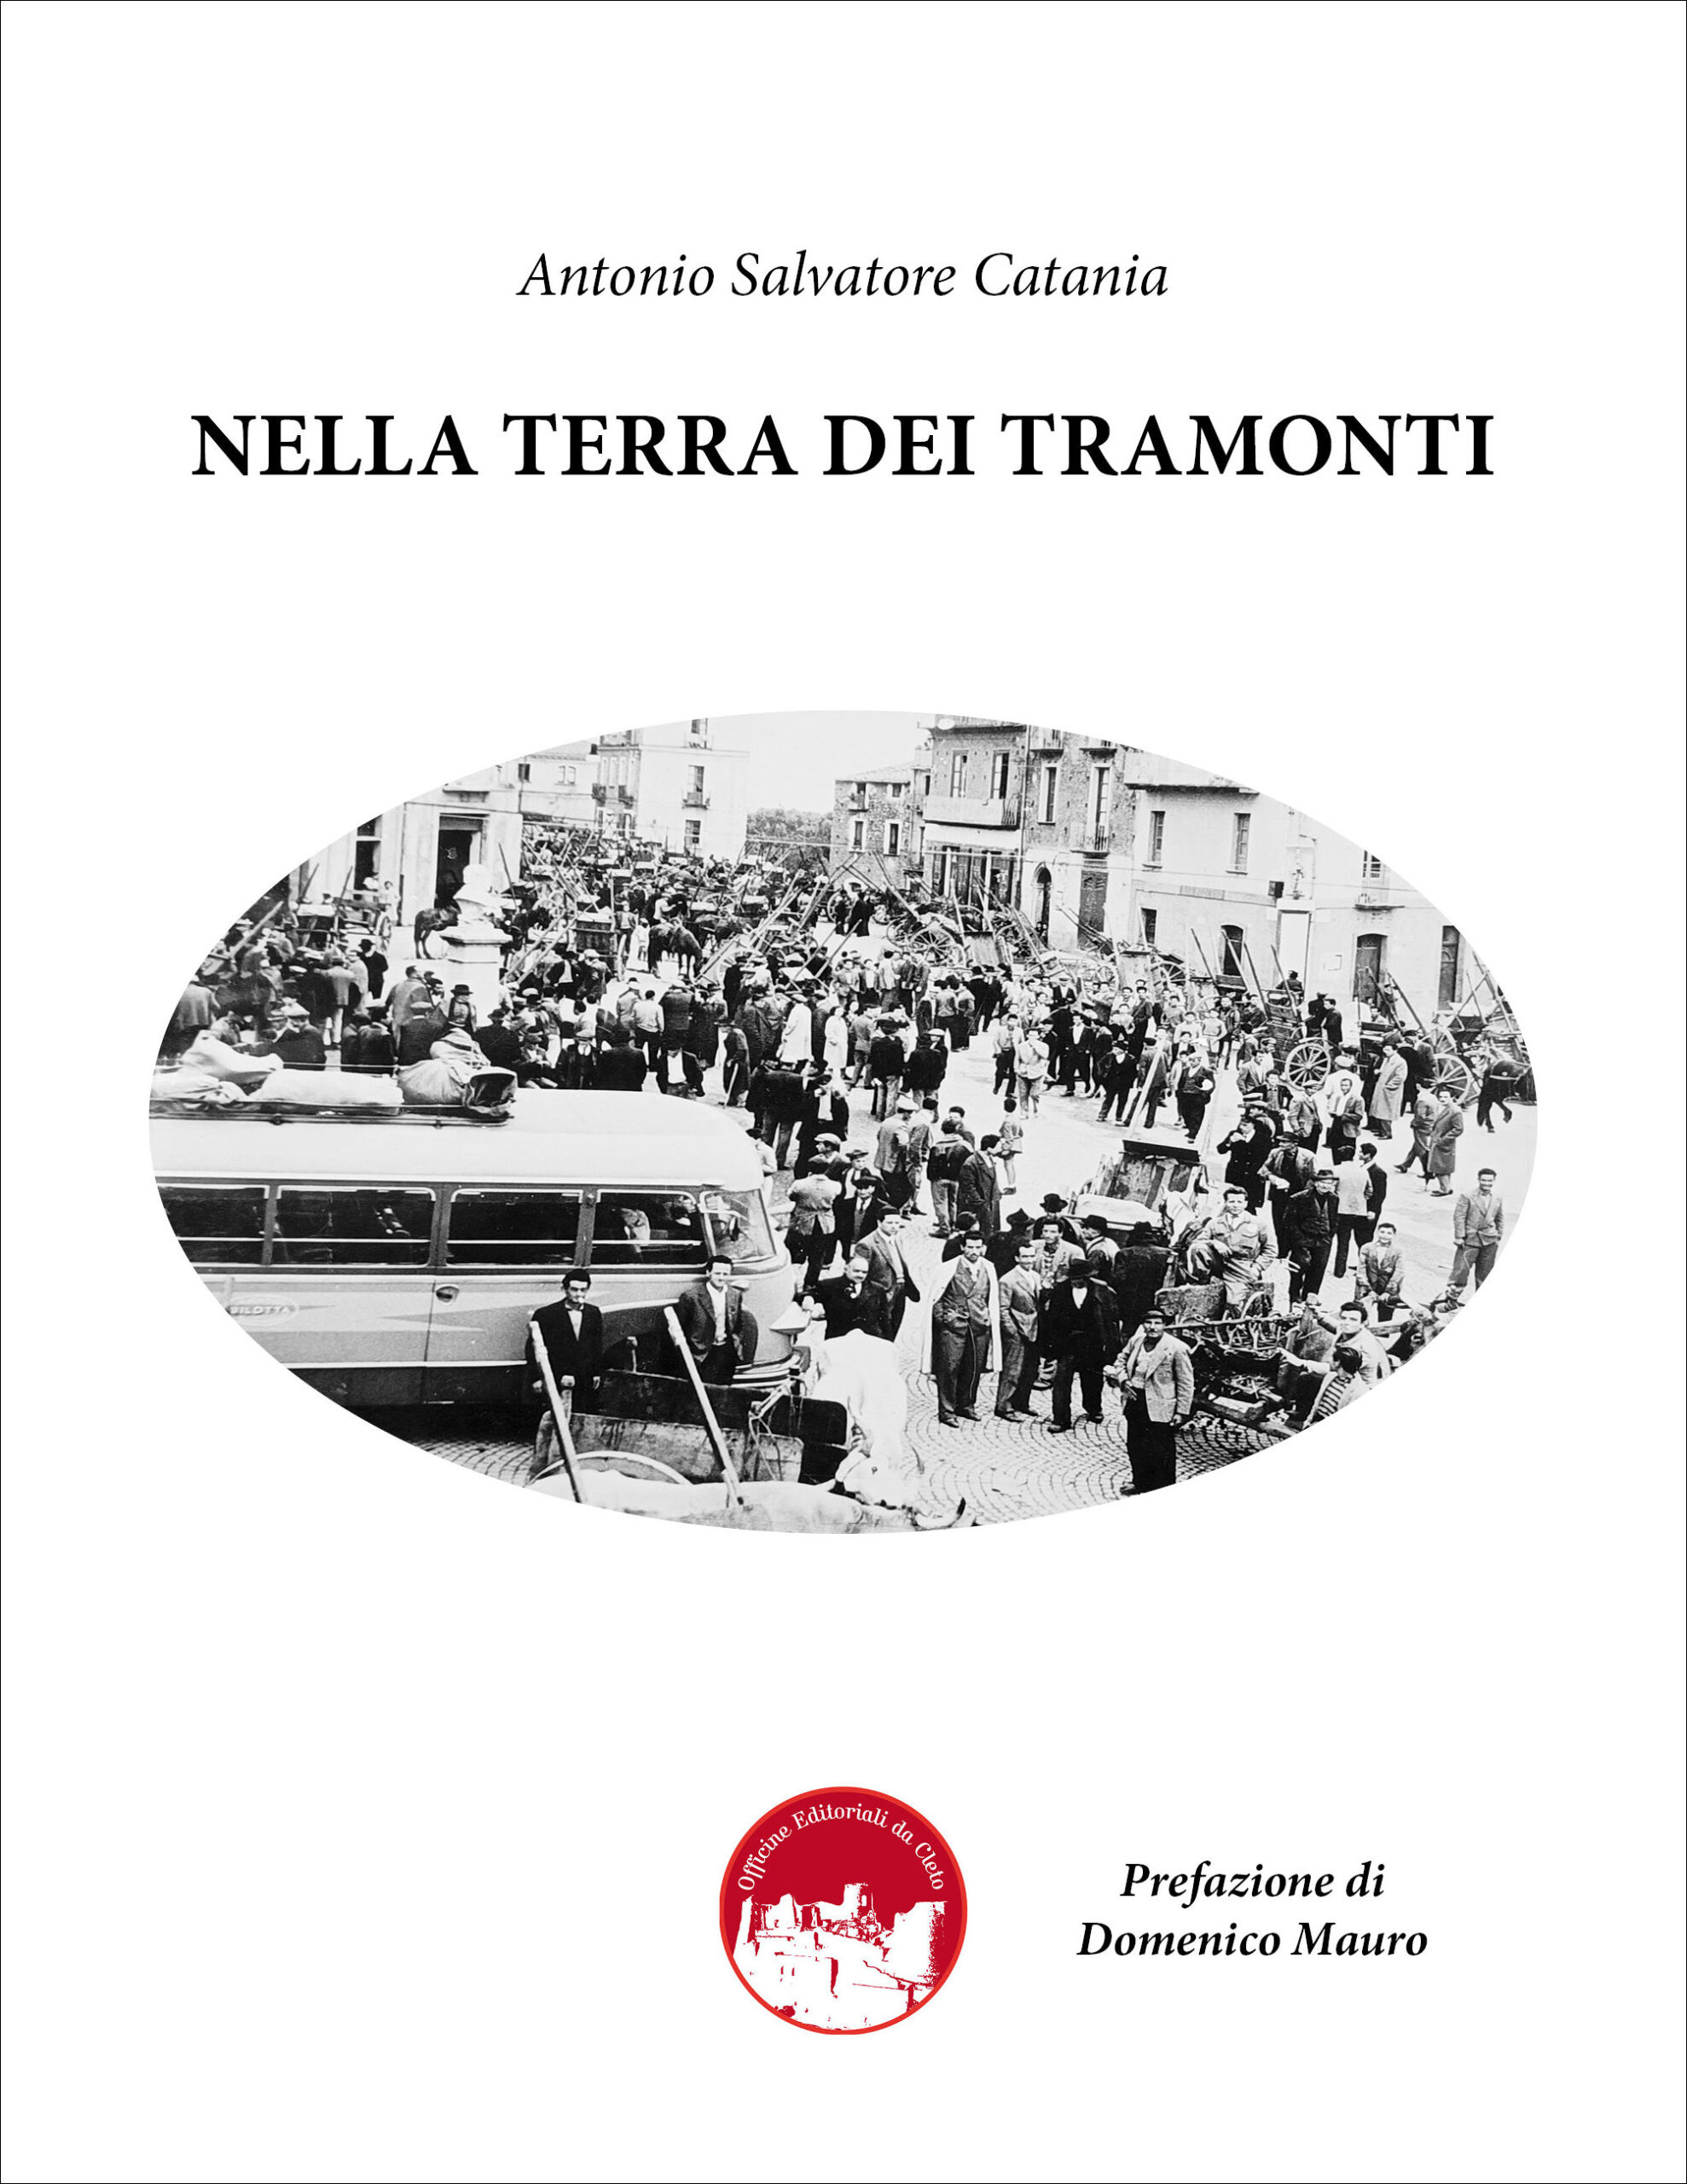 La copertina del libro dal titolo NELLA TERRA DEI TRAMONTI di Antonio Salvatore Catania